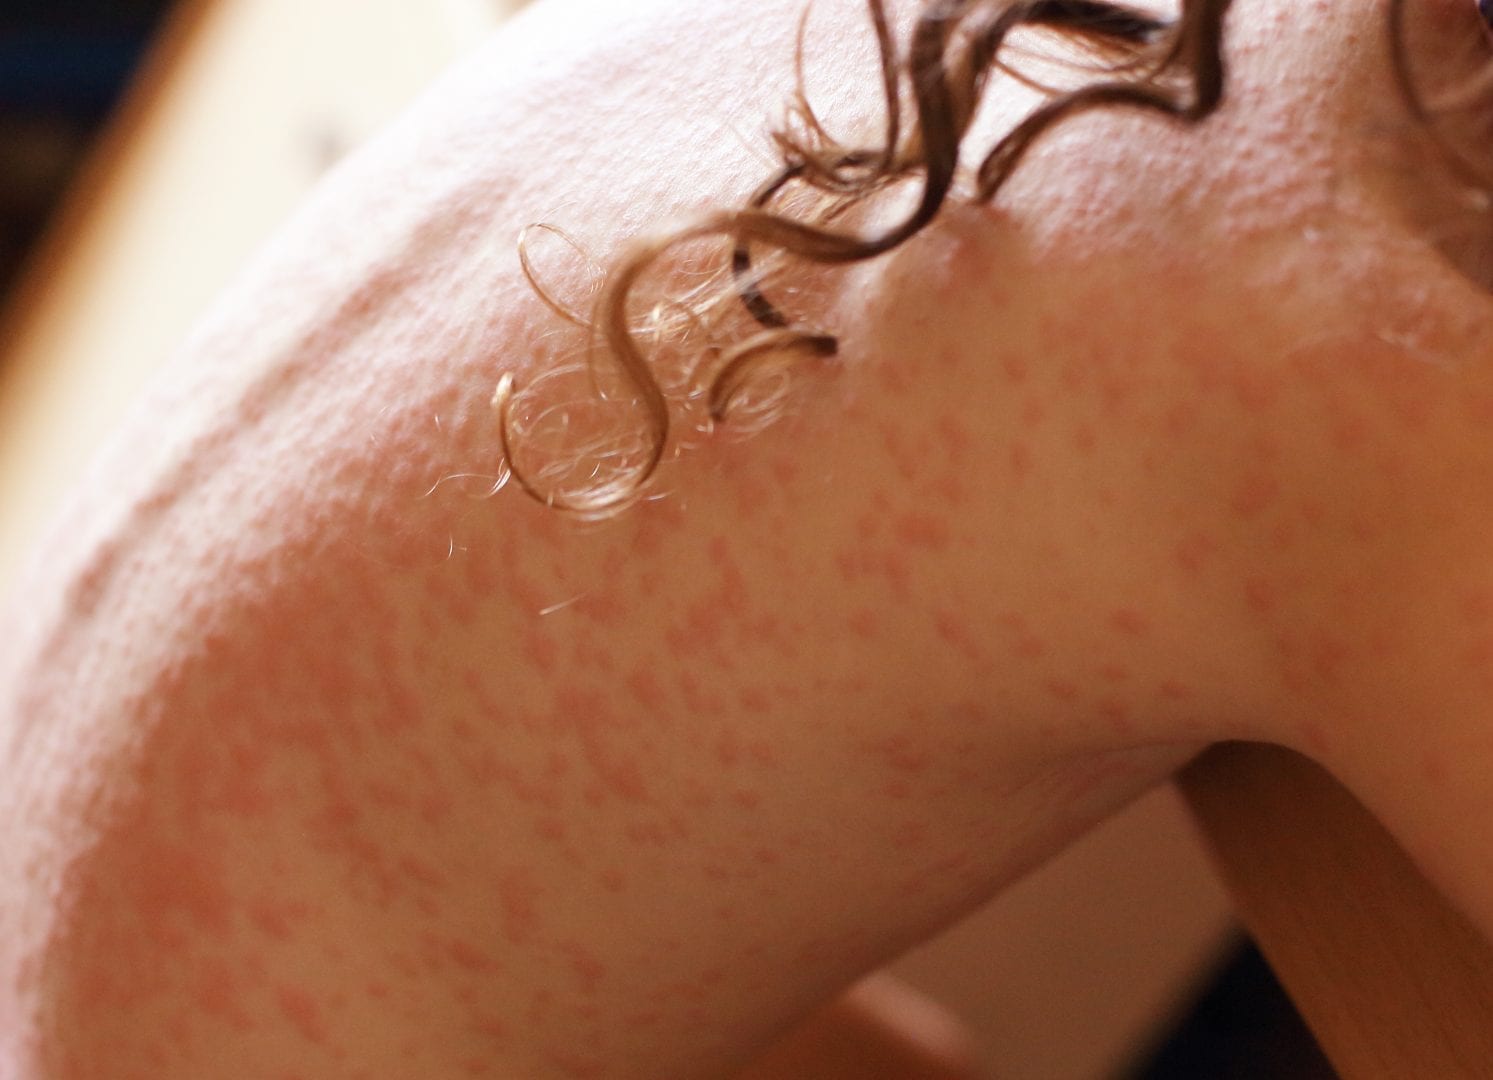 Dermatite - o que é, sintomas, tipos doença e como tratar